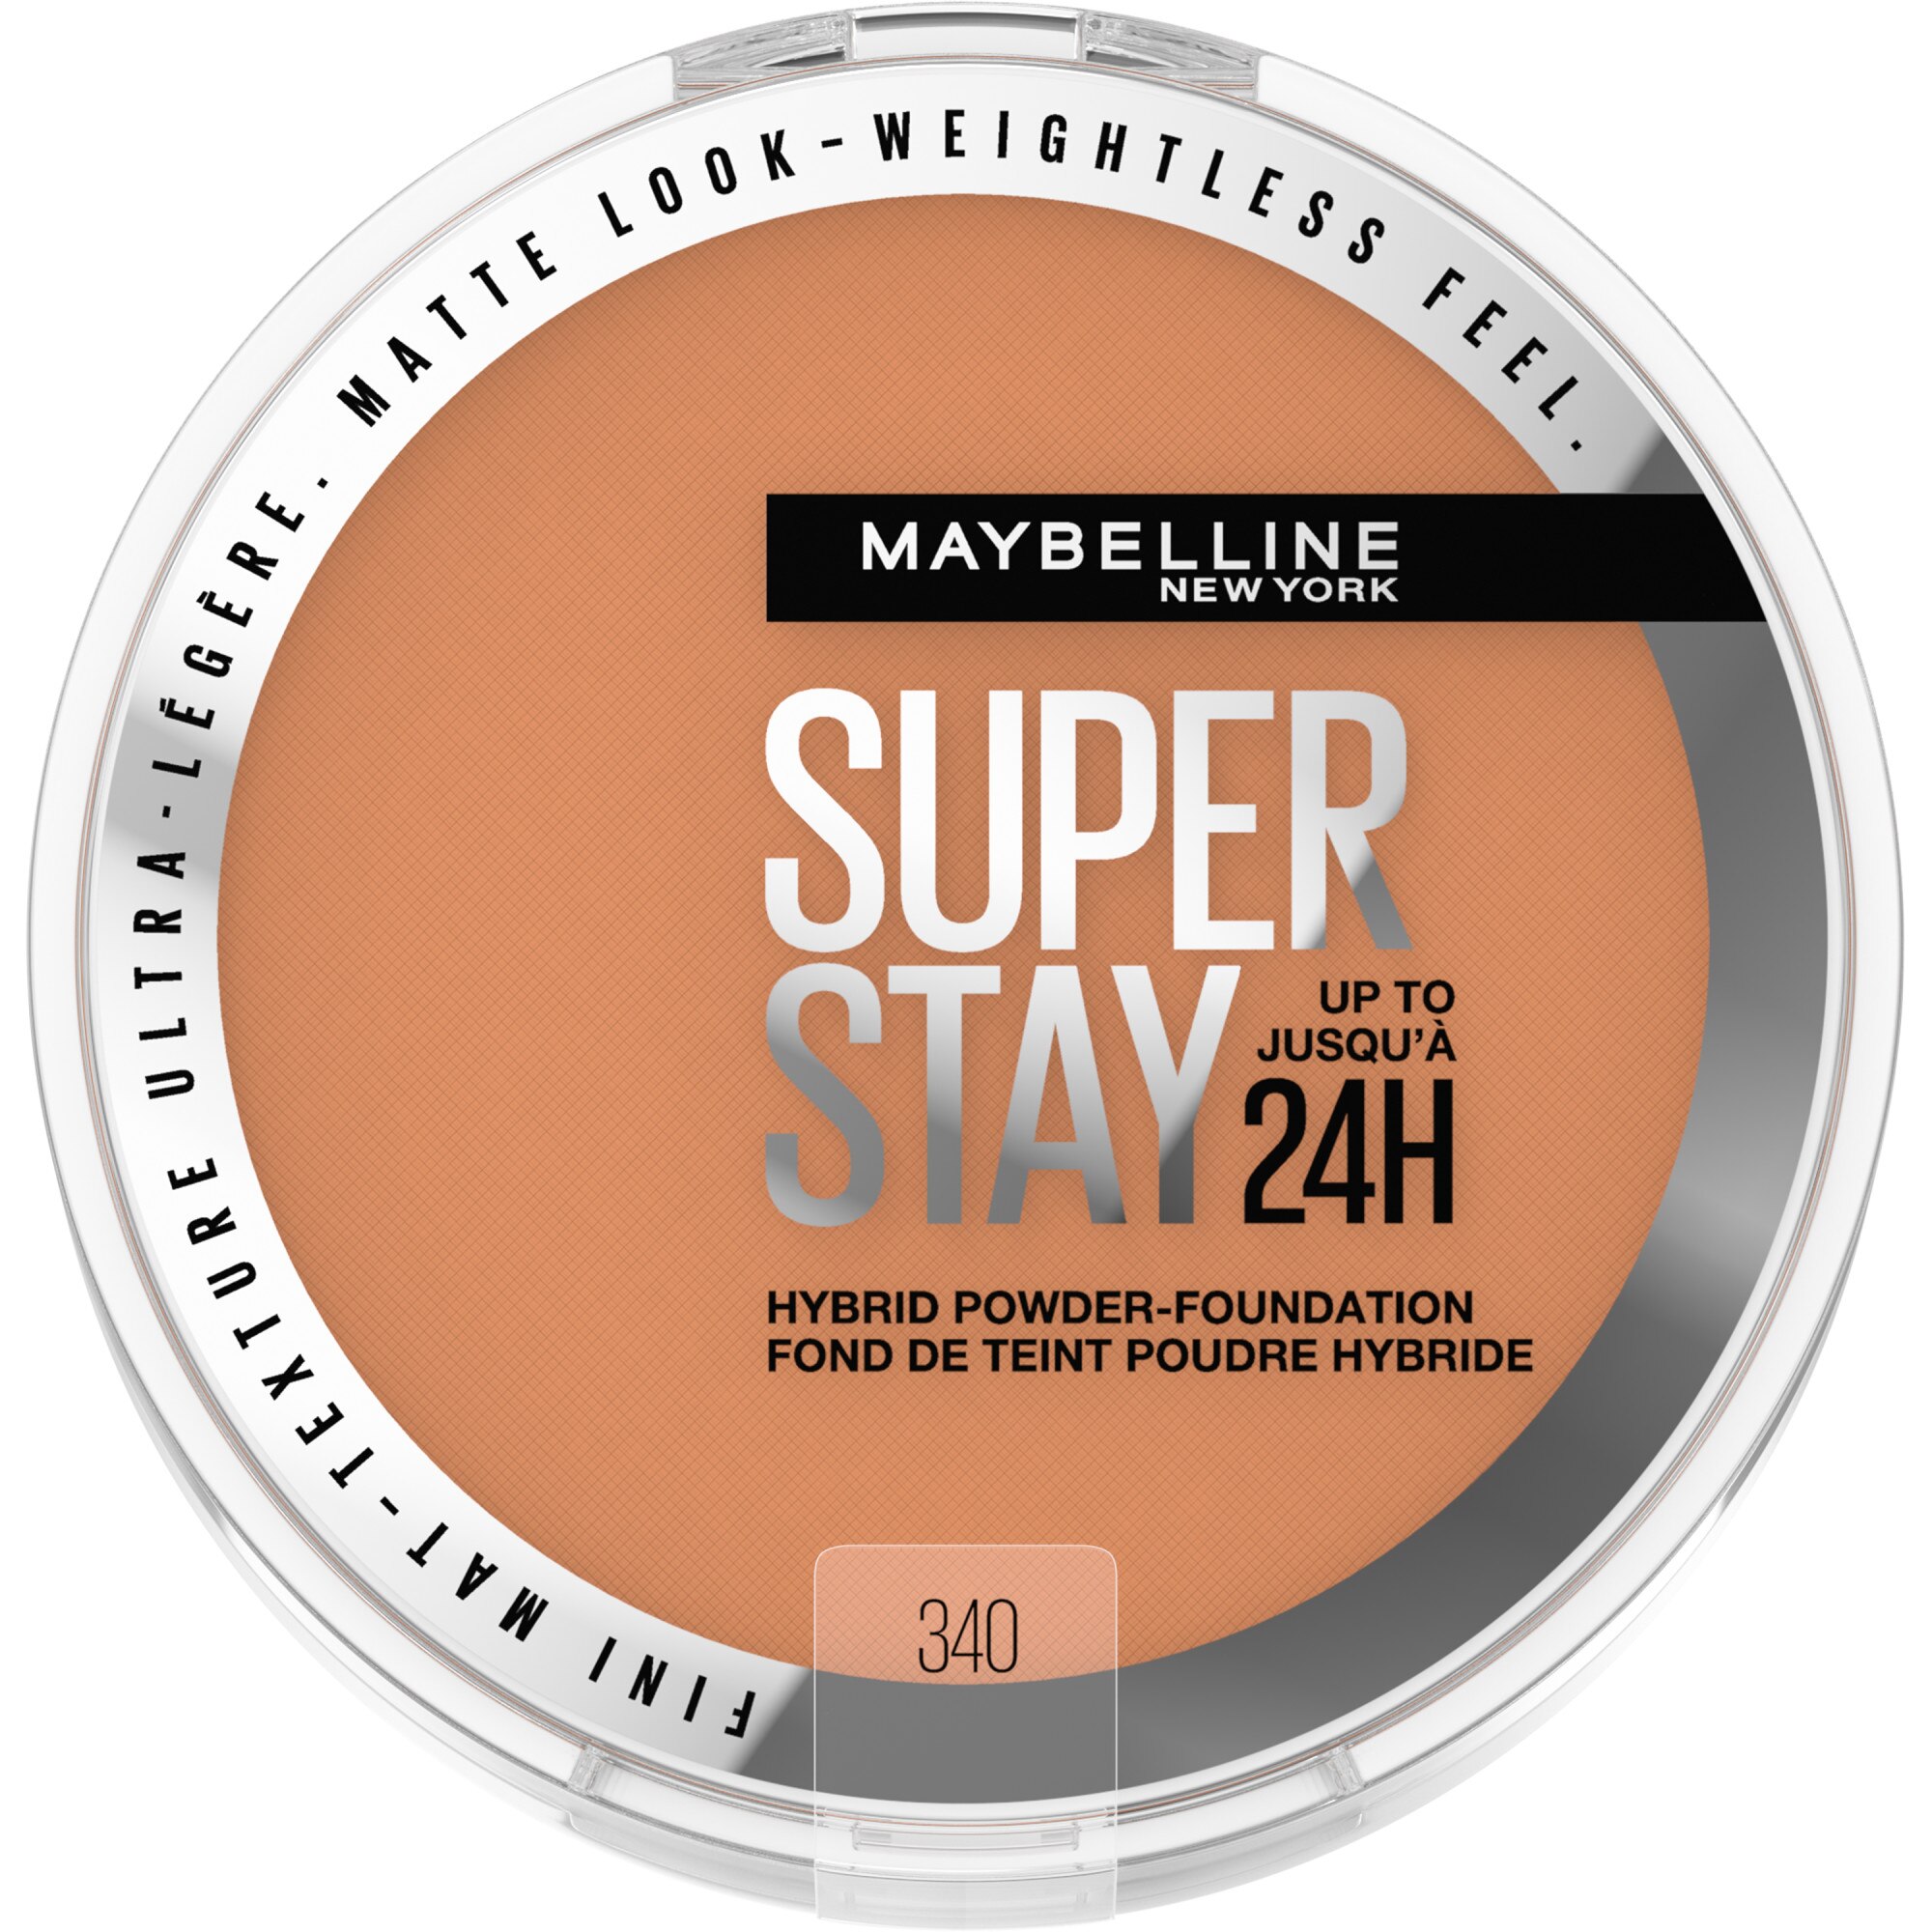 Maybelline New York Super Stay Up To 24HR Hybrid Powder-Foundation, 340, 0.21 Oz , CVS